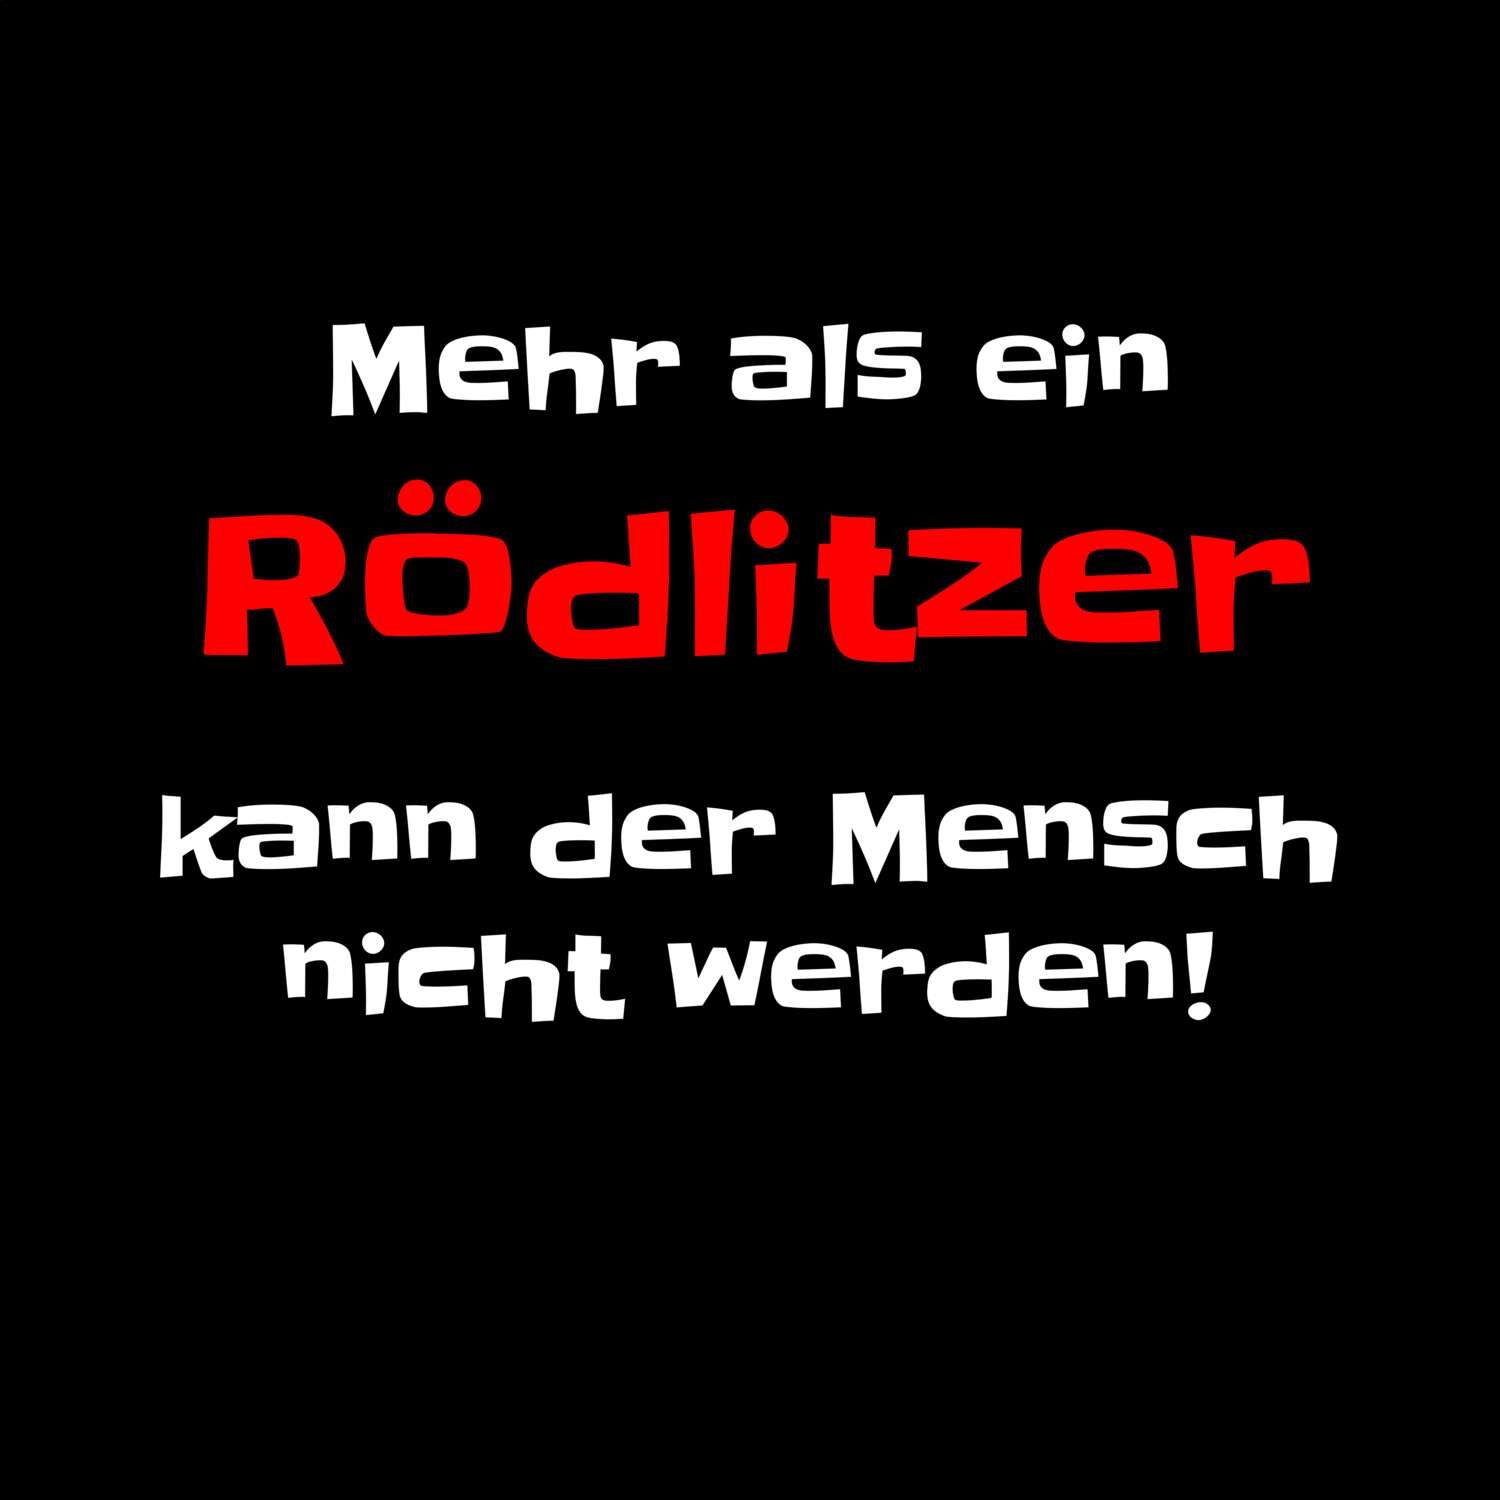 Rödlitz T-Shirt »Mehr als ein«